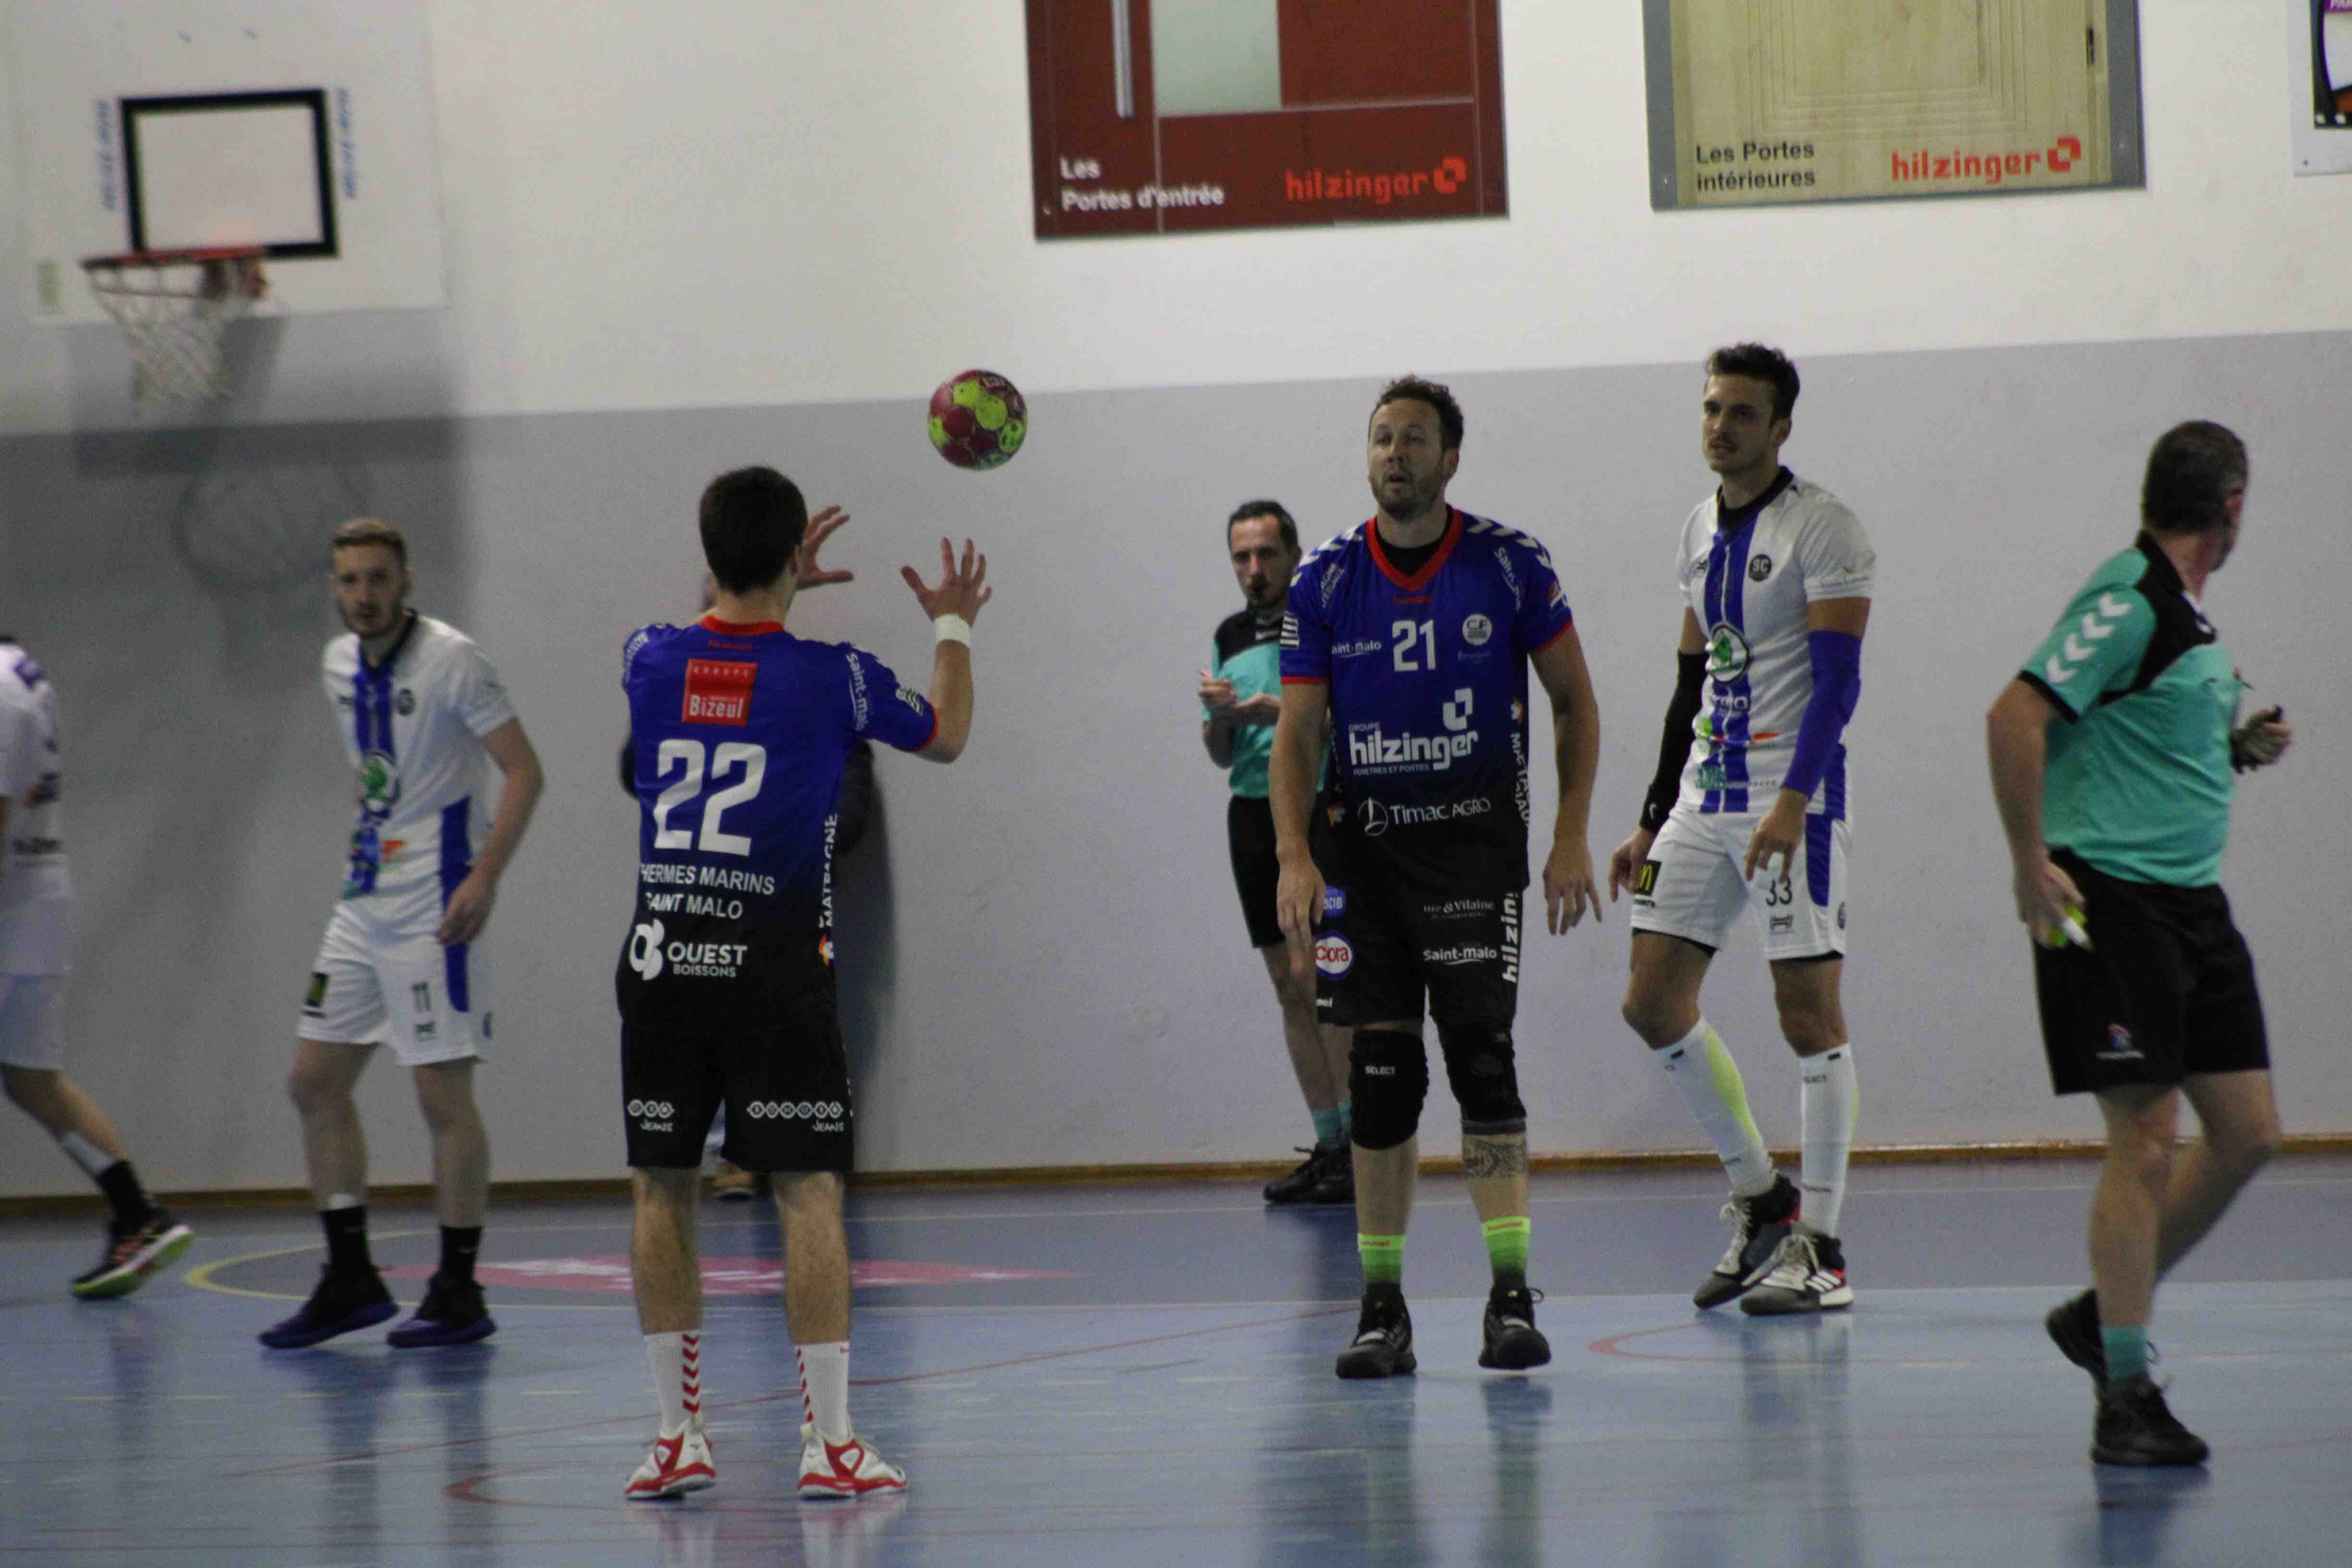 2019nov23 CJF hb _ SC handball (17)